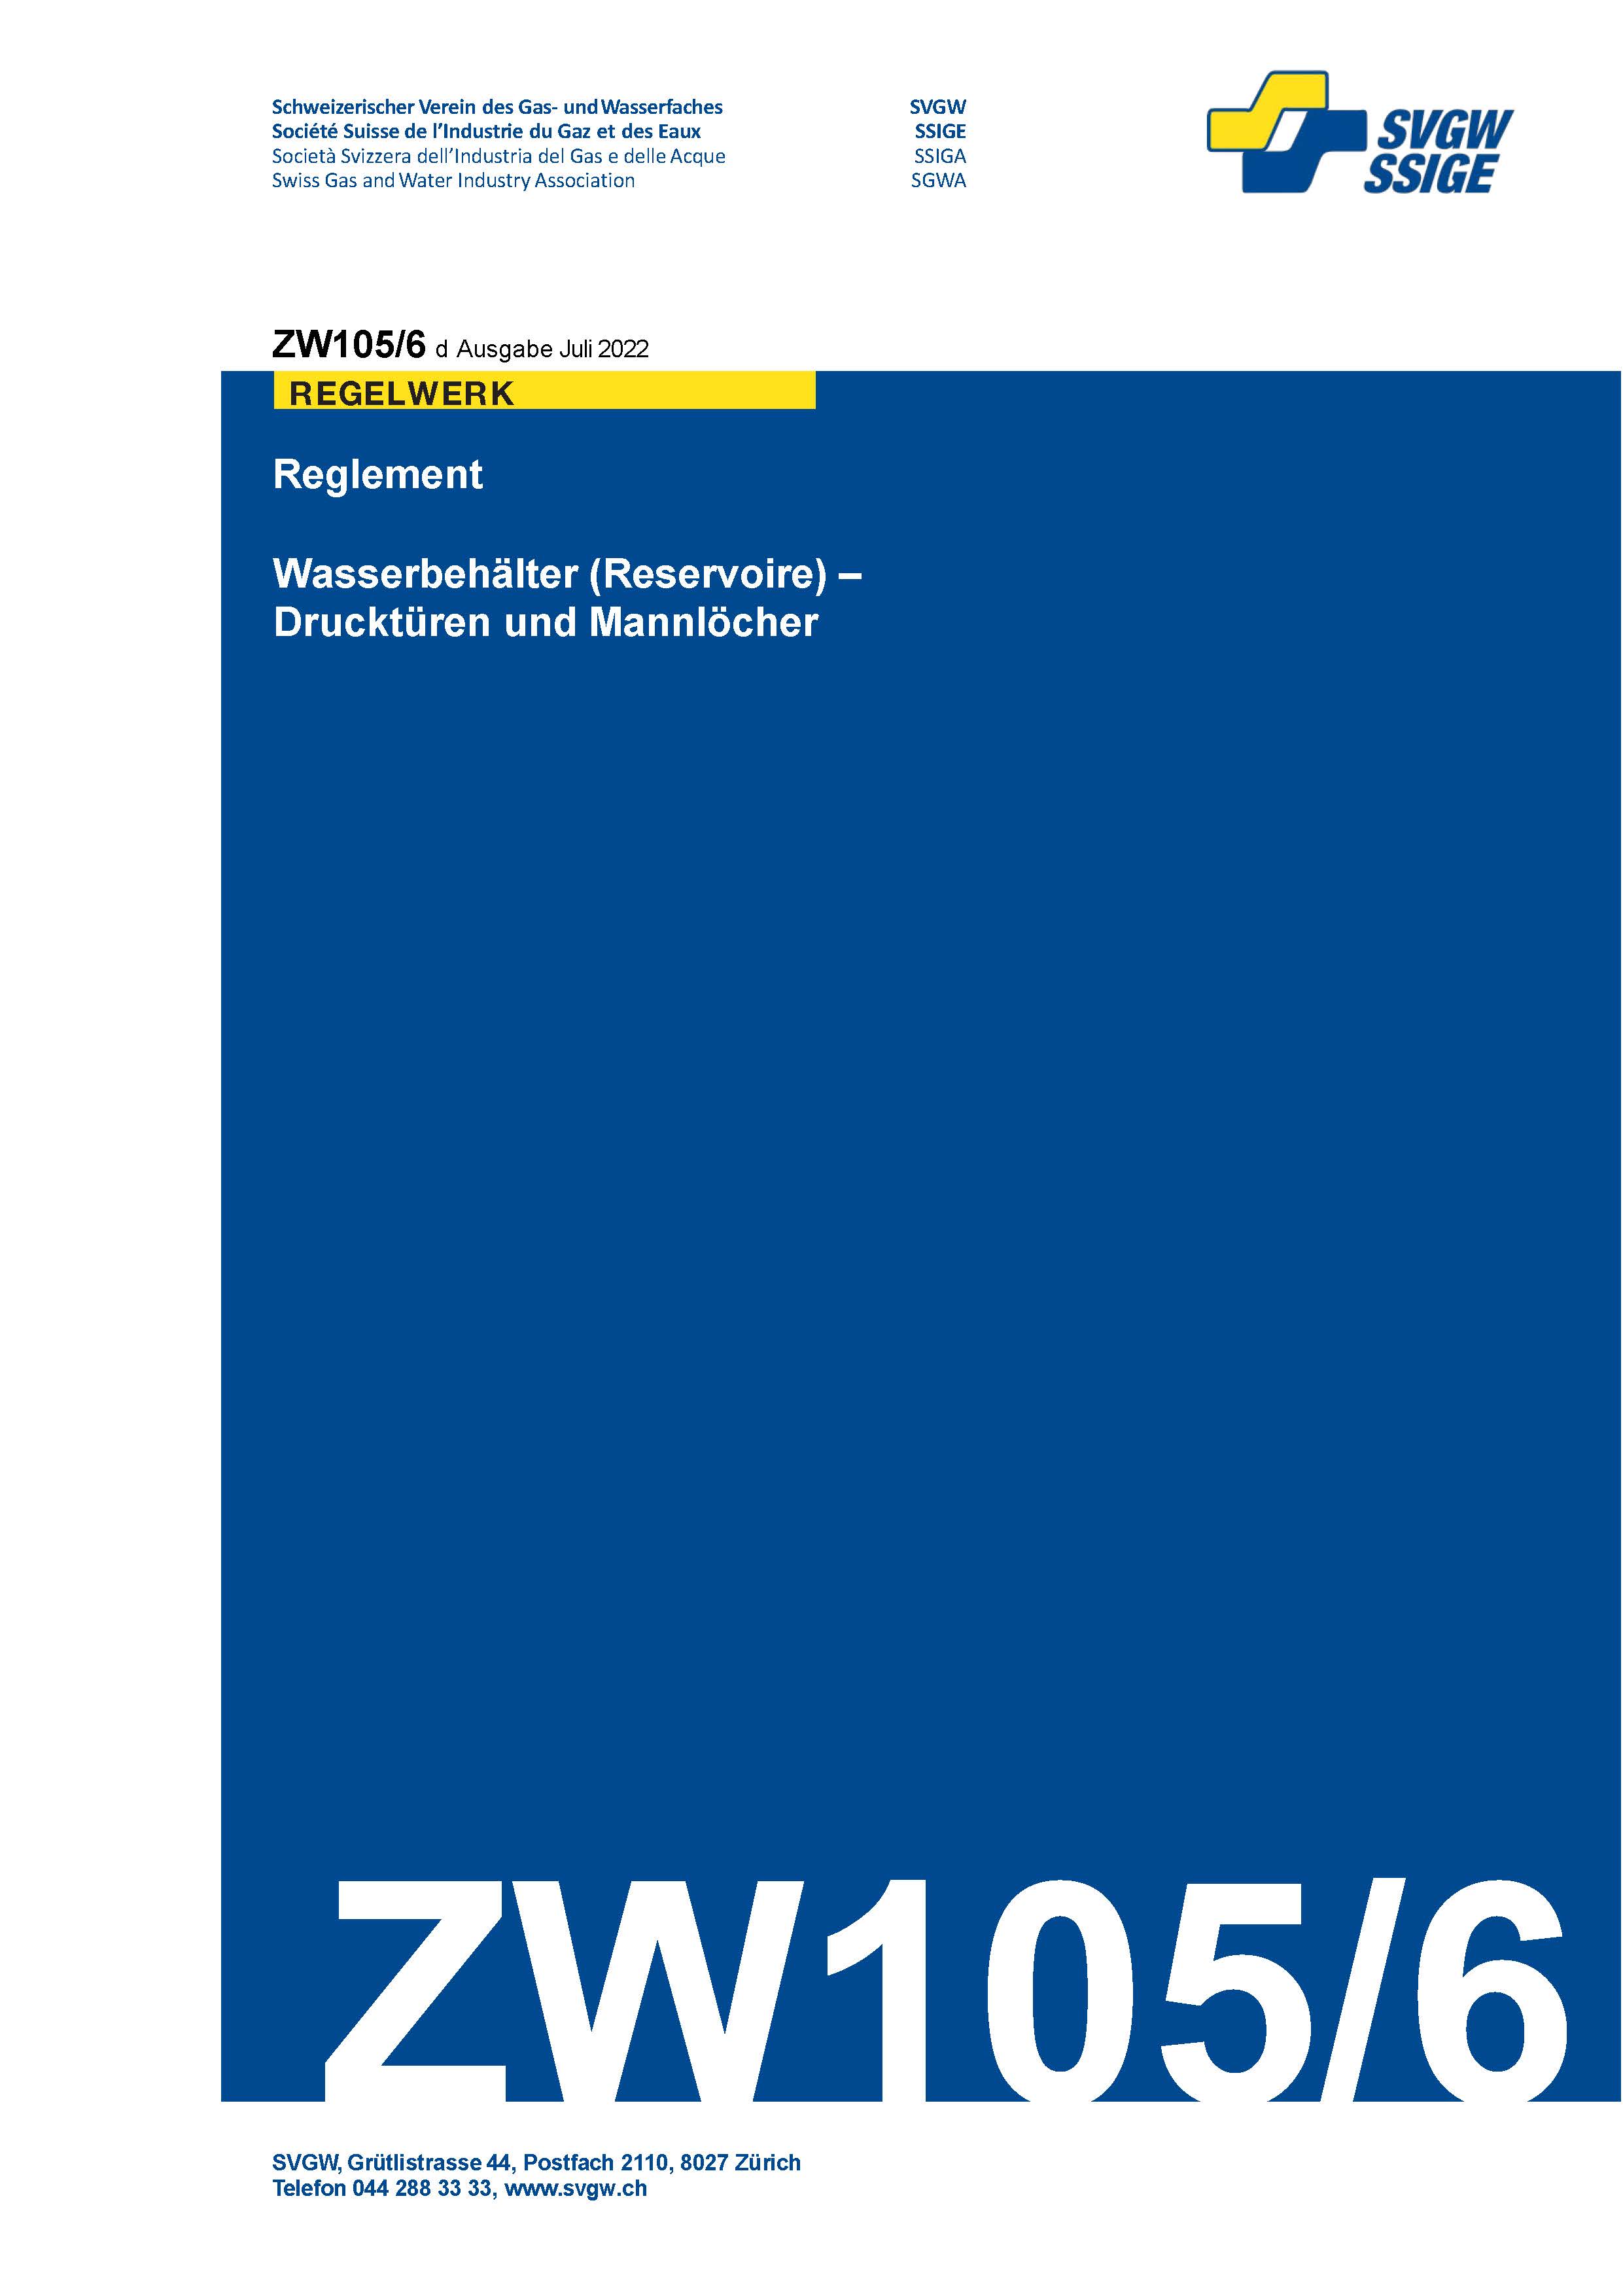 ZW105/6 d - Reglement; Wasserbehälter (Reservoire) - Drucktüren und Mannlöcher